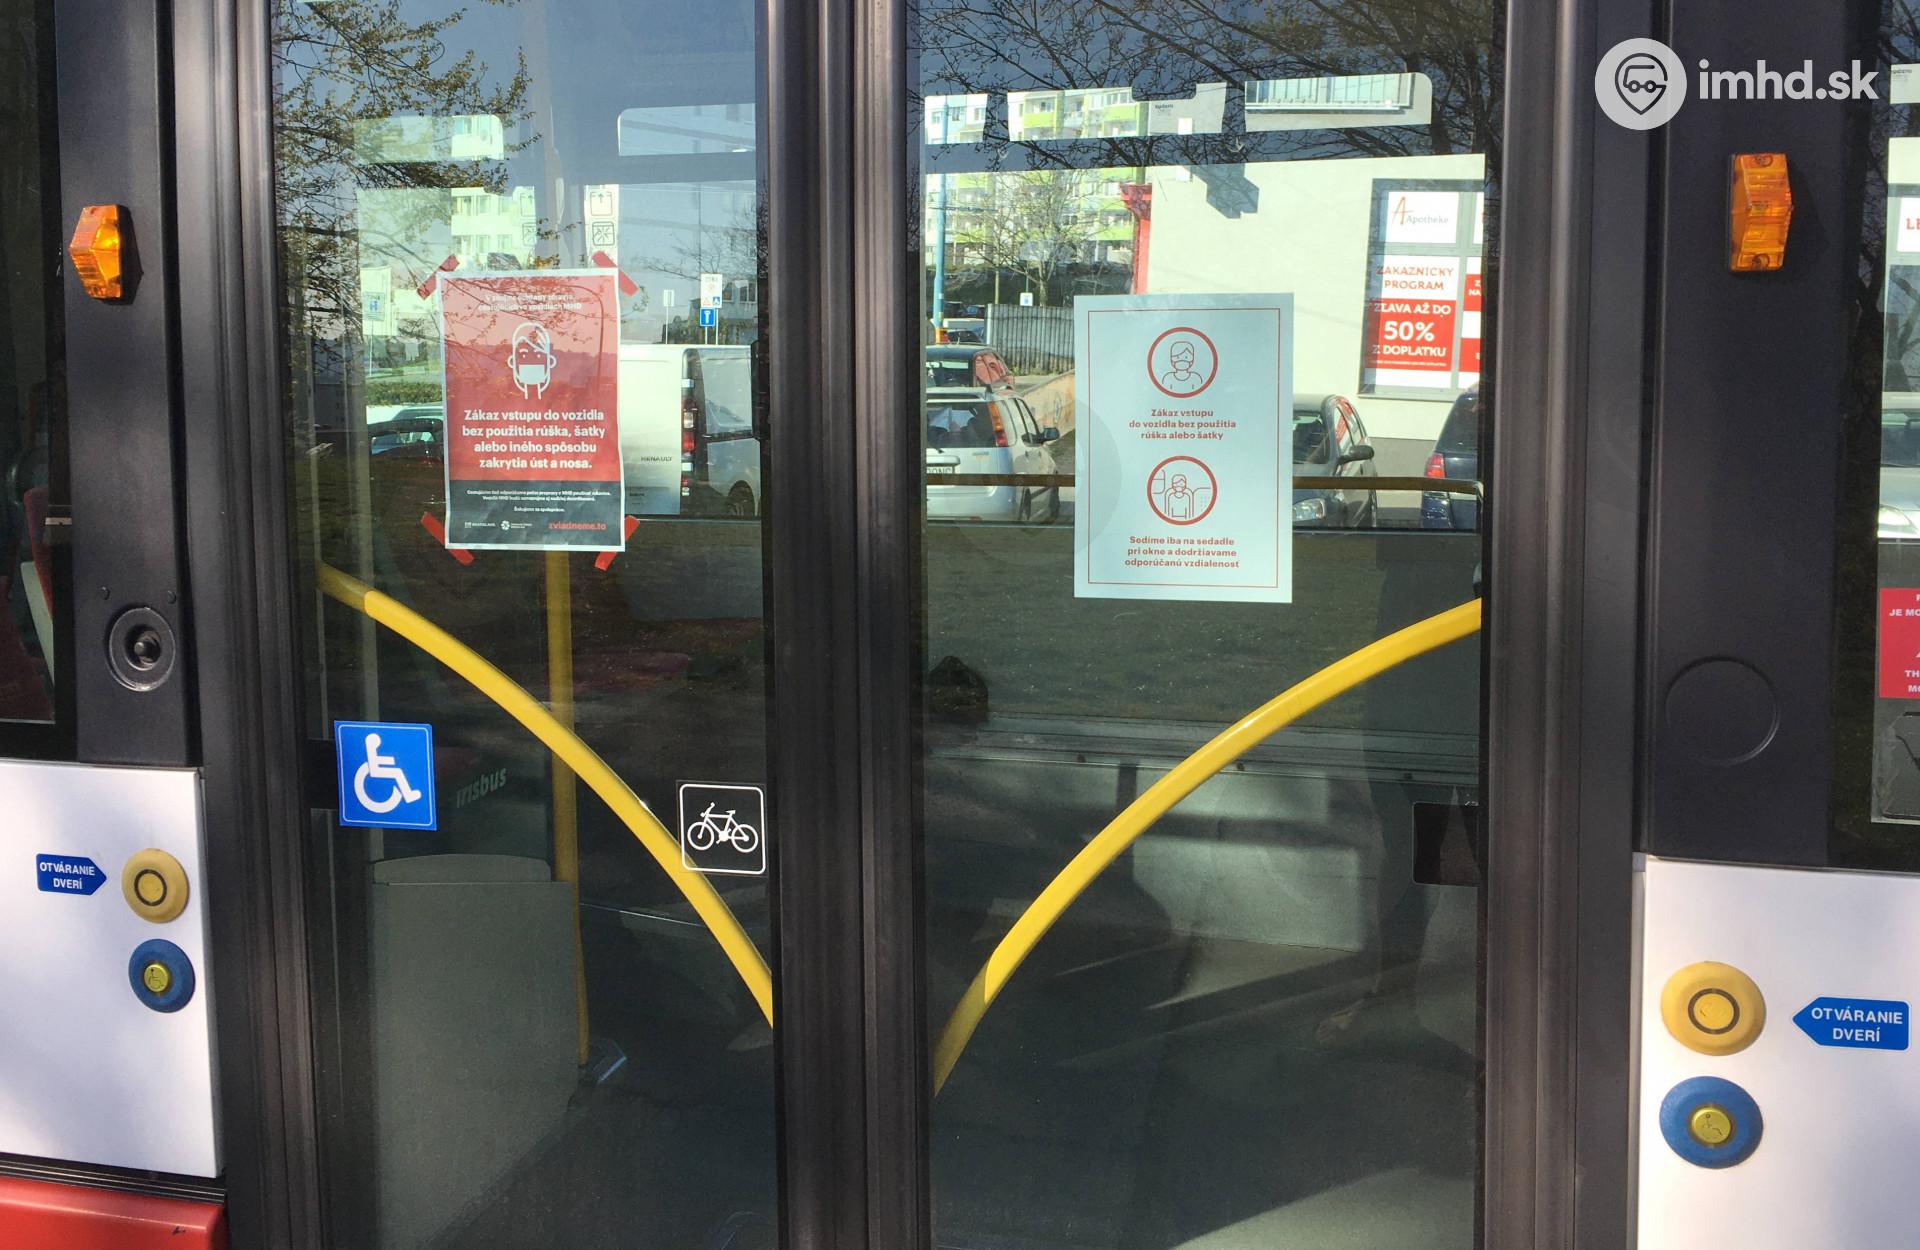 Informačné letáky na dverách trolejbusu upozorňujúce na povinnosť zakrytia dýchacích ciest a obsadzovanie sedadiel iba pri oknách